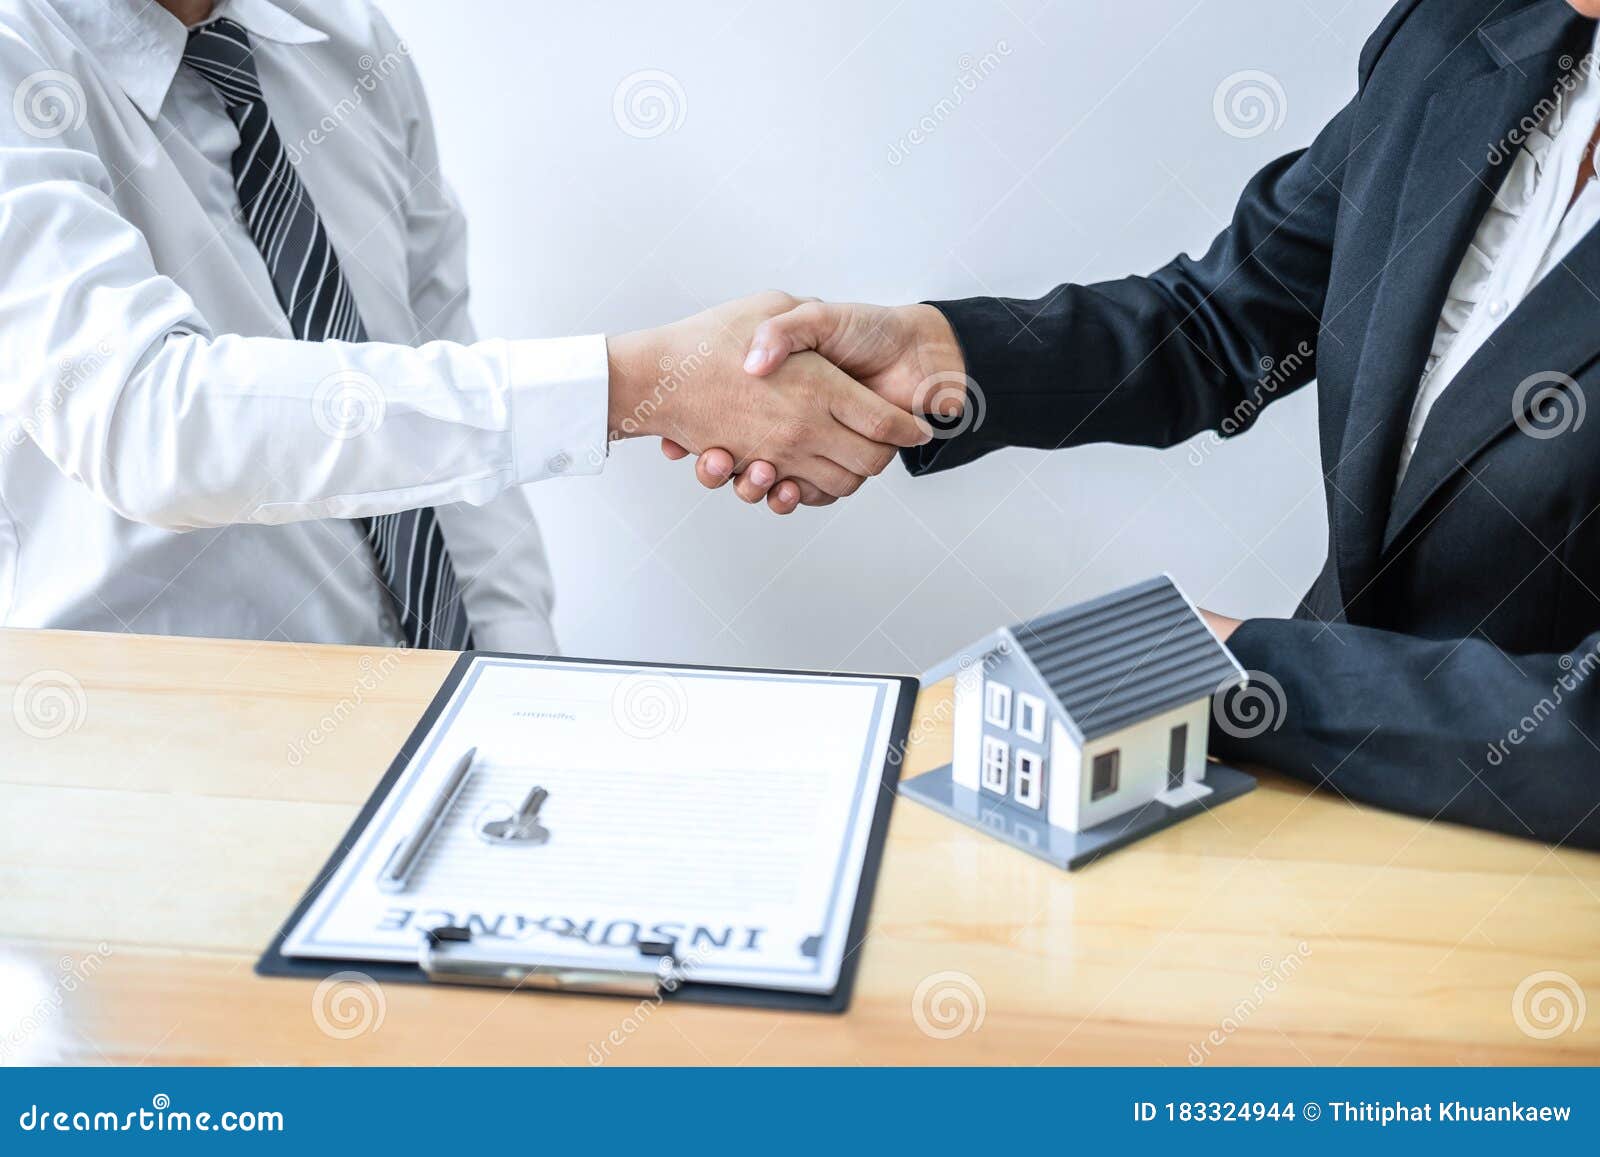 房地产代理商在交易后握手，将房子、钥匙在商谈后交给客户，并签订合同库存照片- 图片包括有预算值, 贷款: 183324944